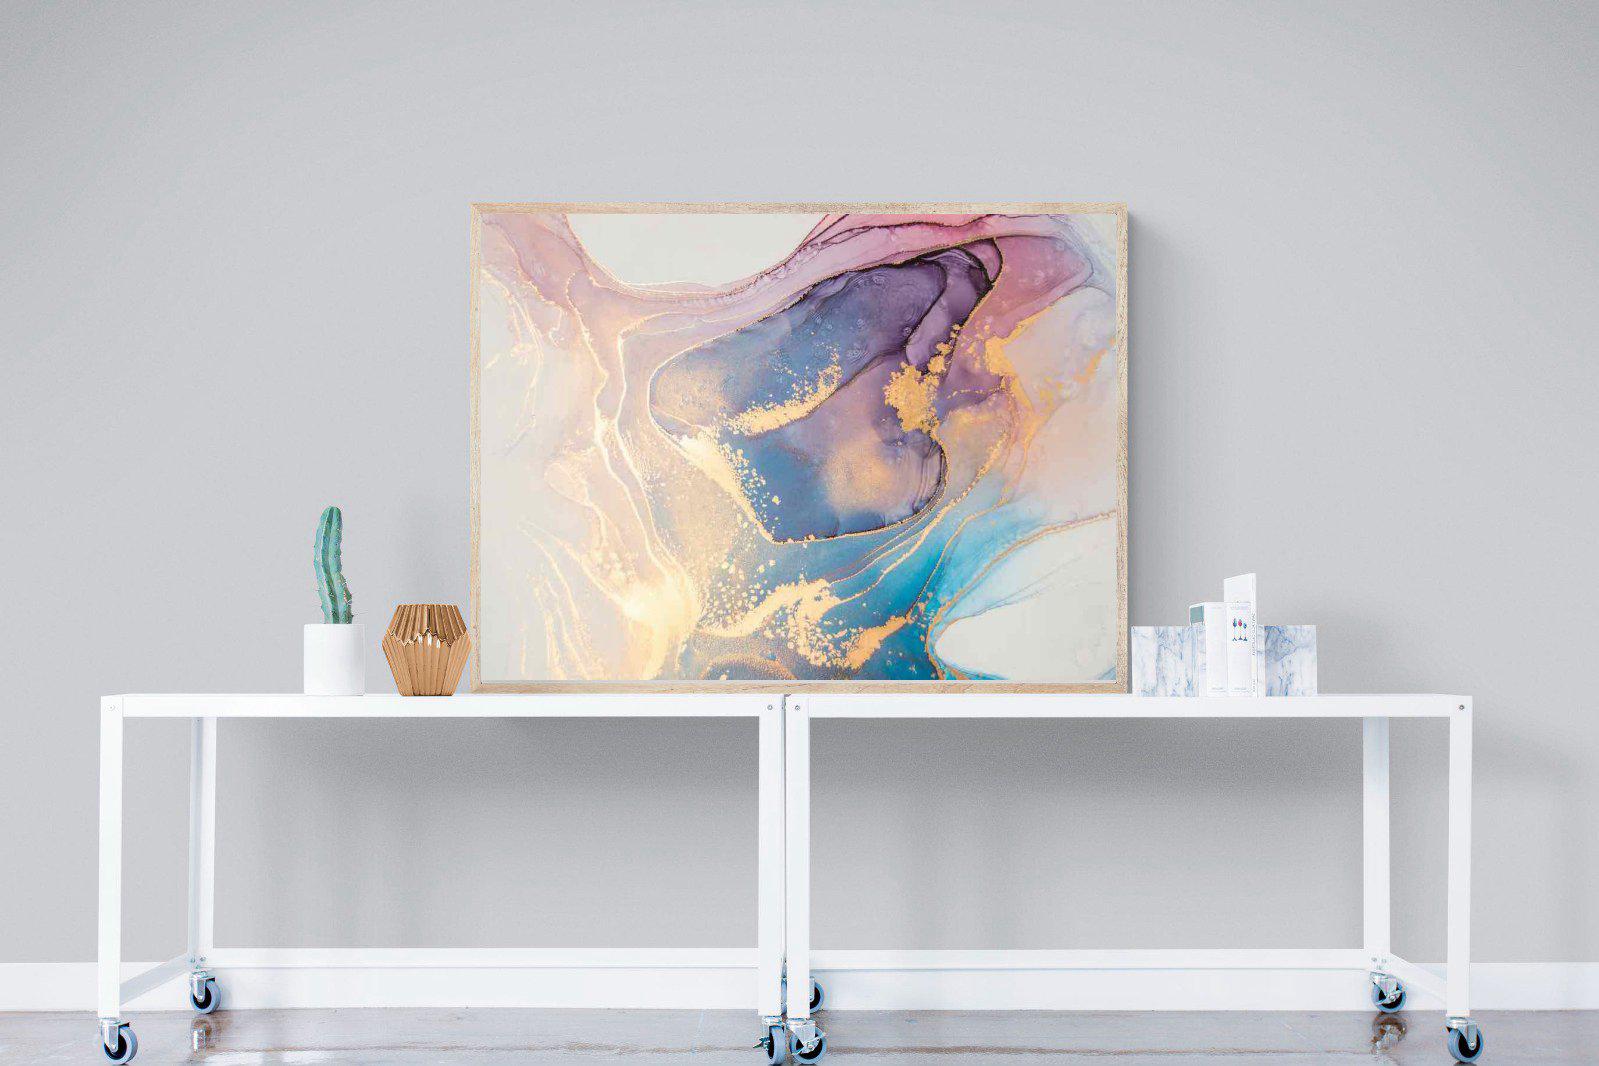 Blushing-Wall_Art-120 x 90cm-Mounted Canvas-Wood-Pixalot